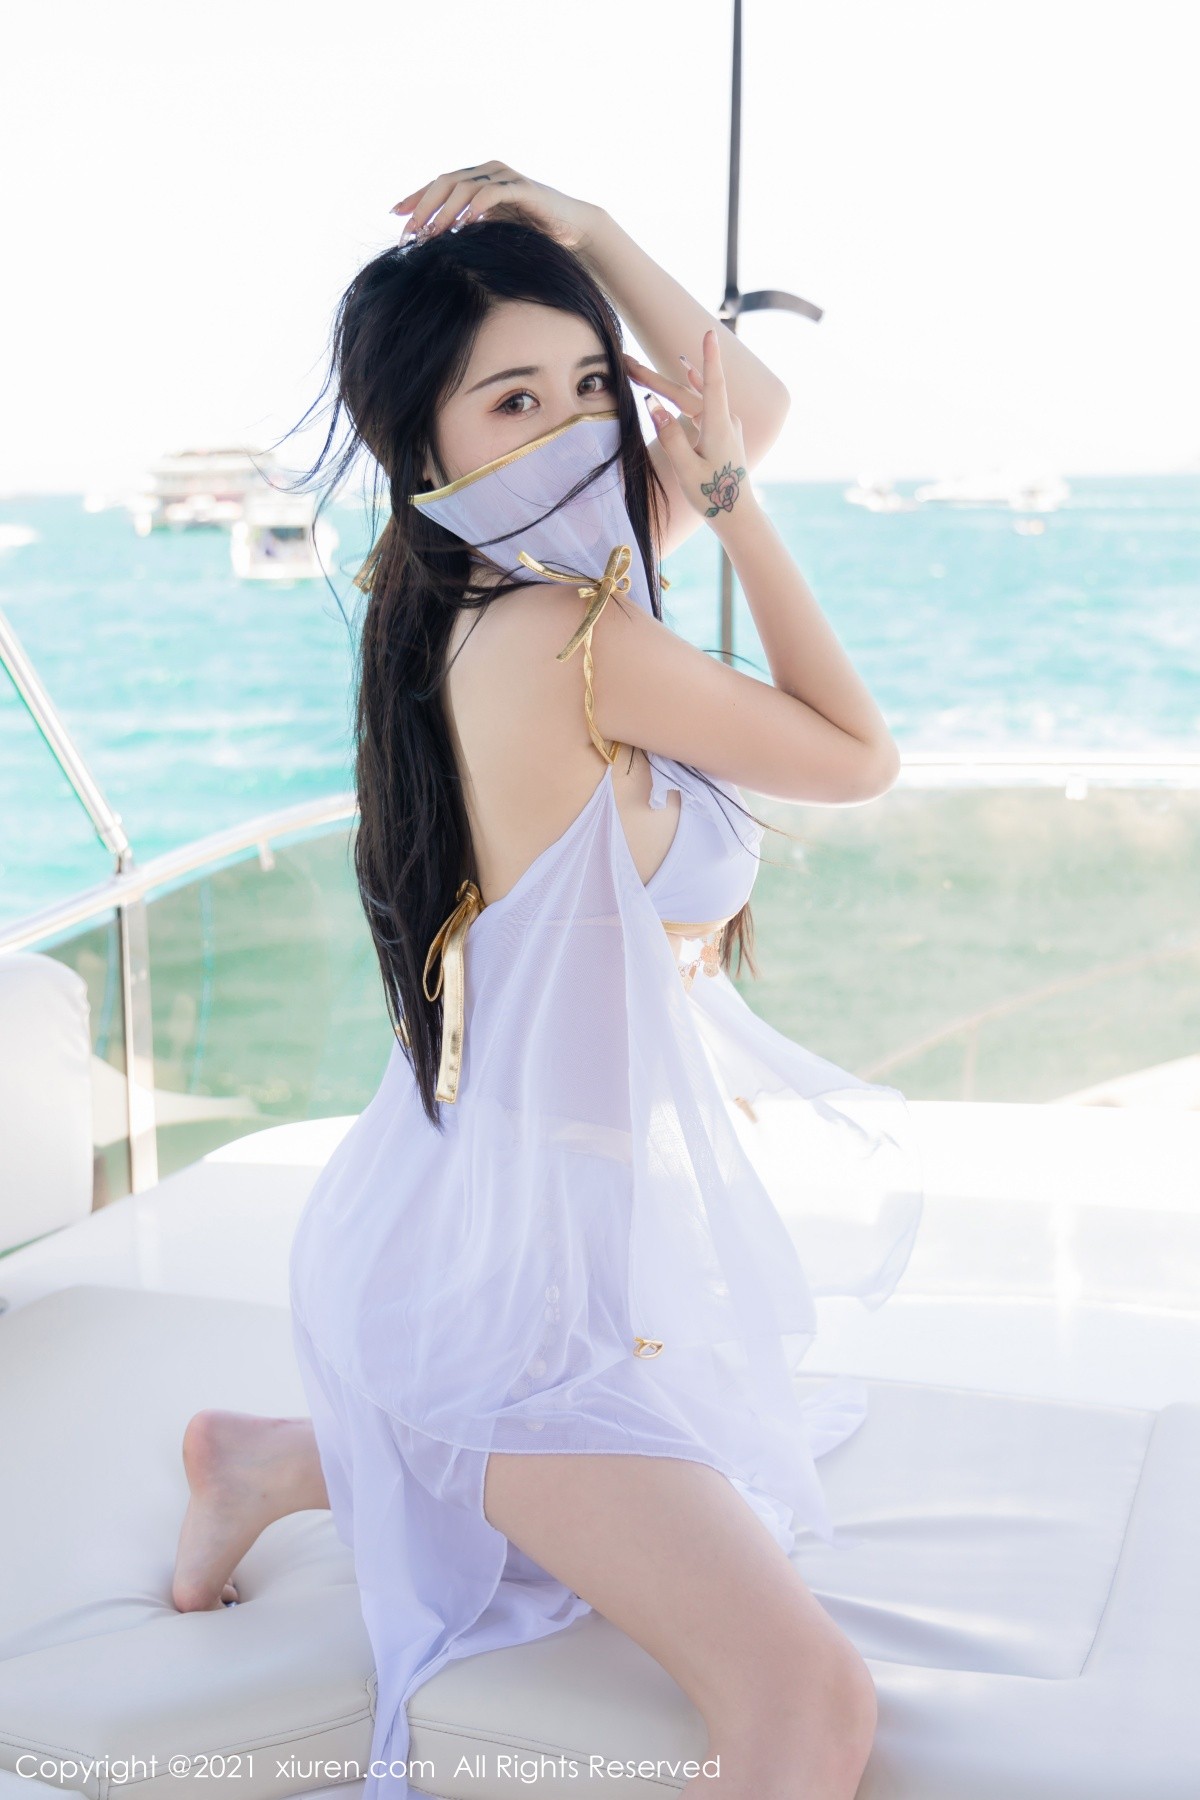 美女模特美七Mia绚丽异域风情海上游艇拍摄性感写真